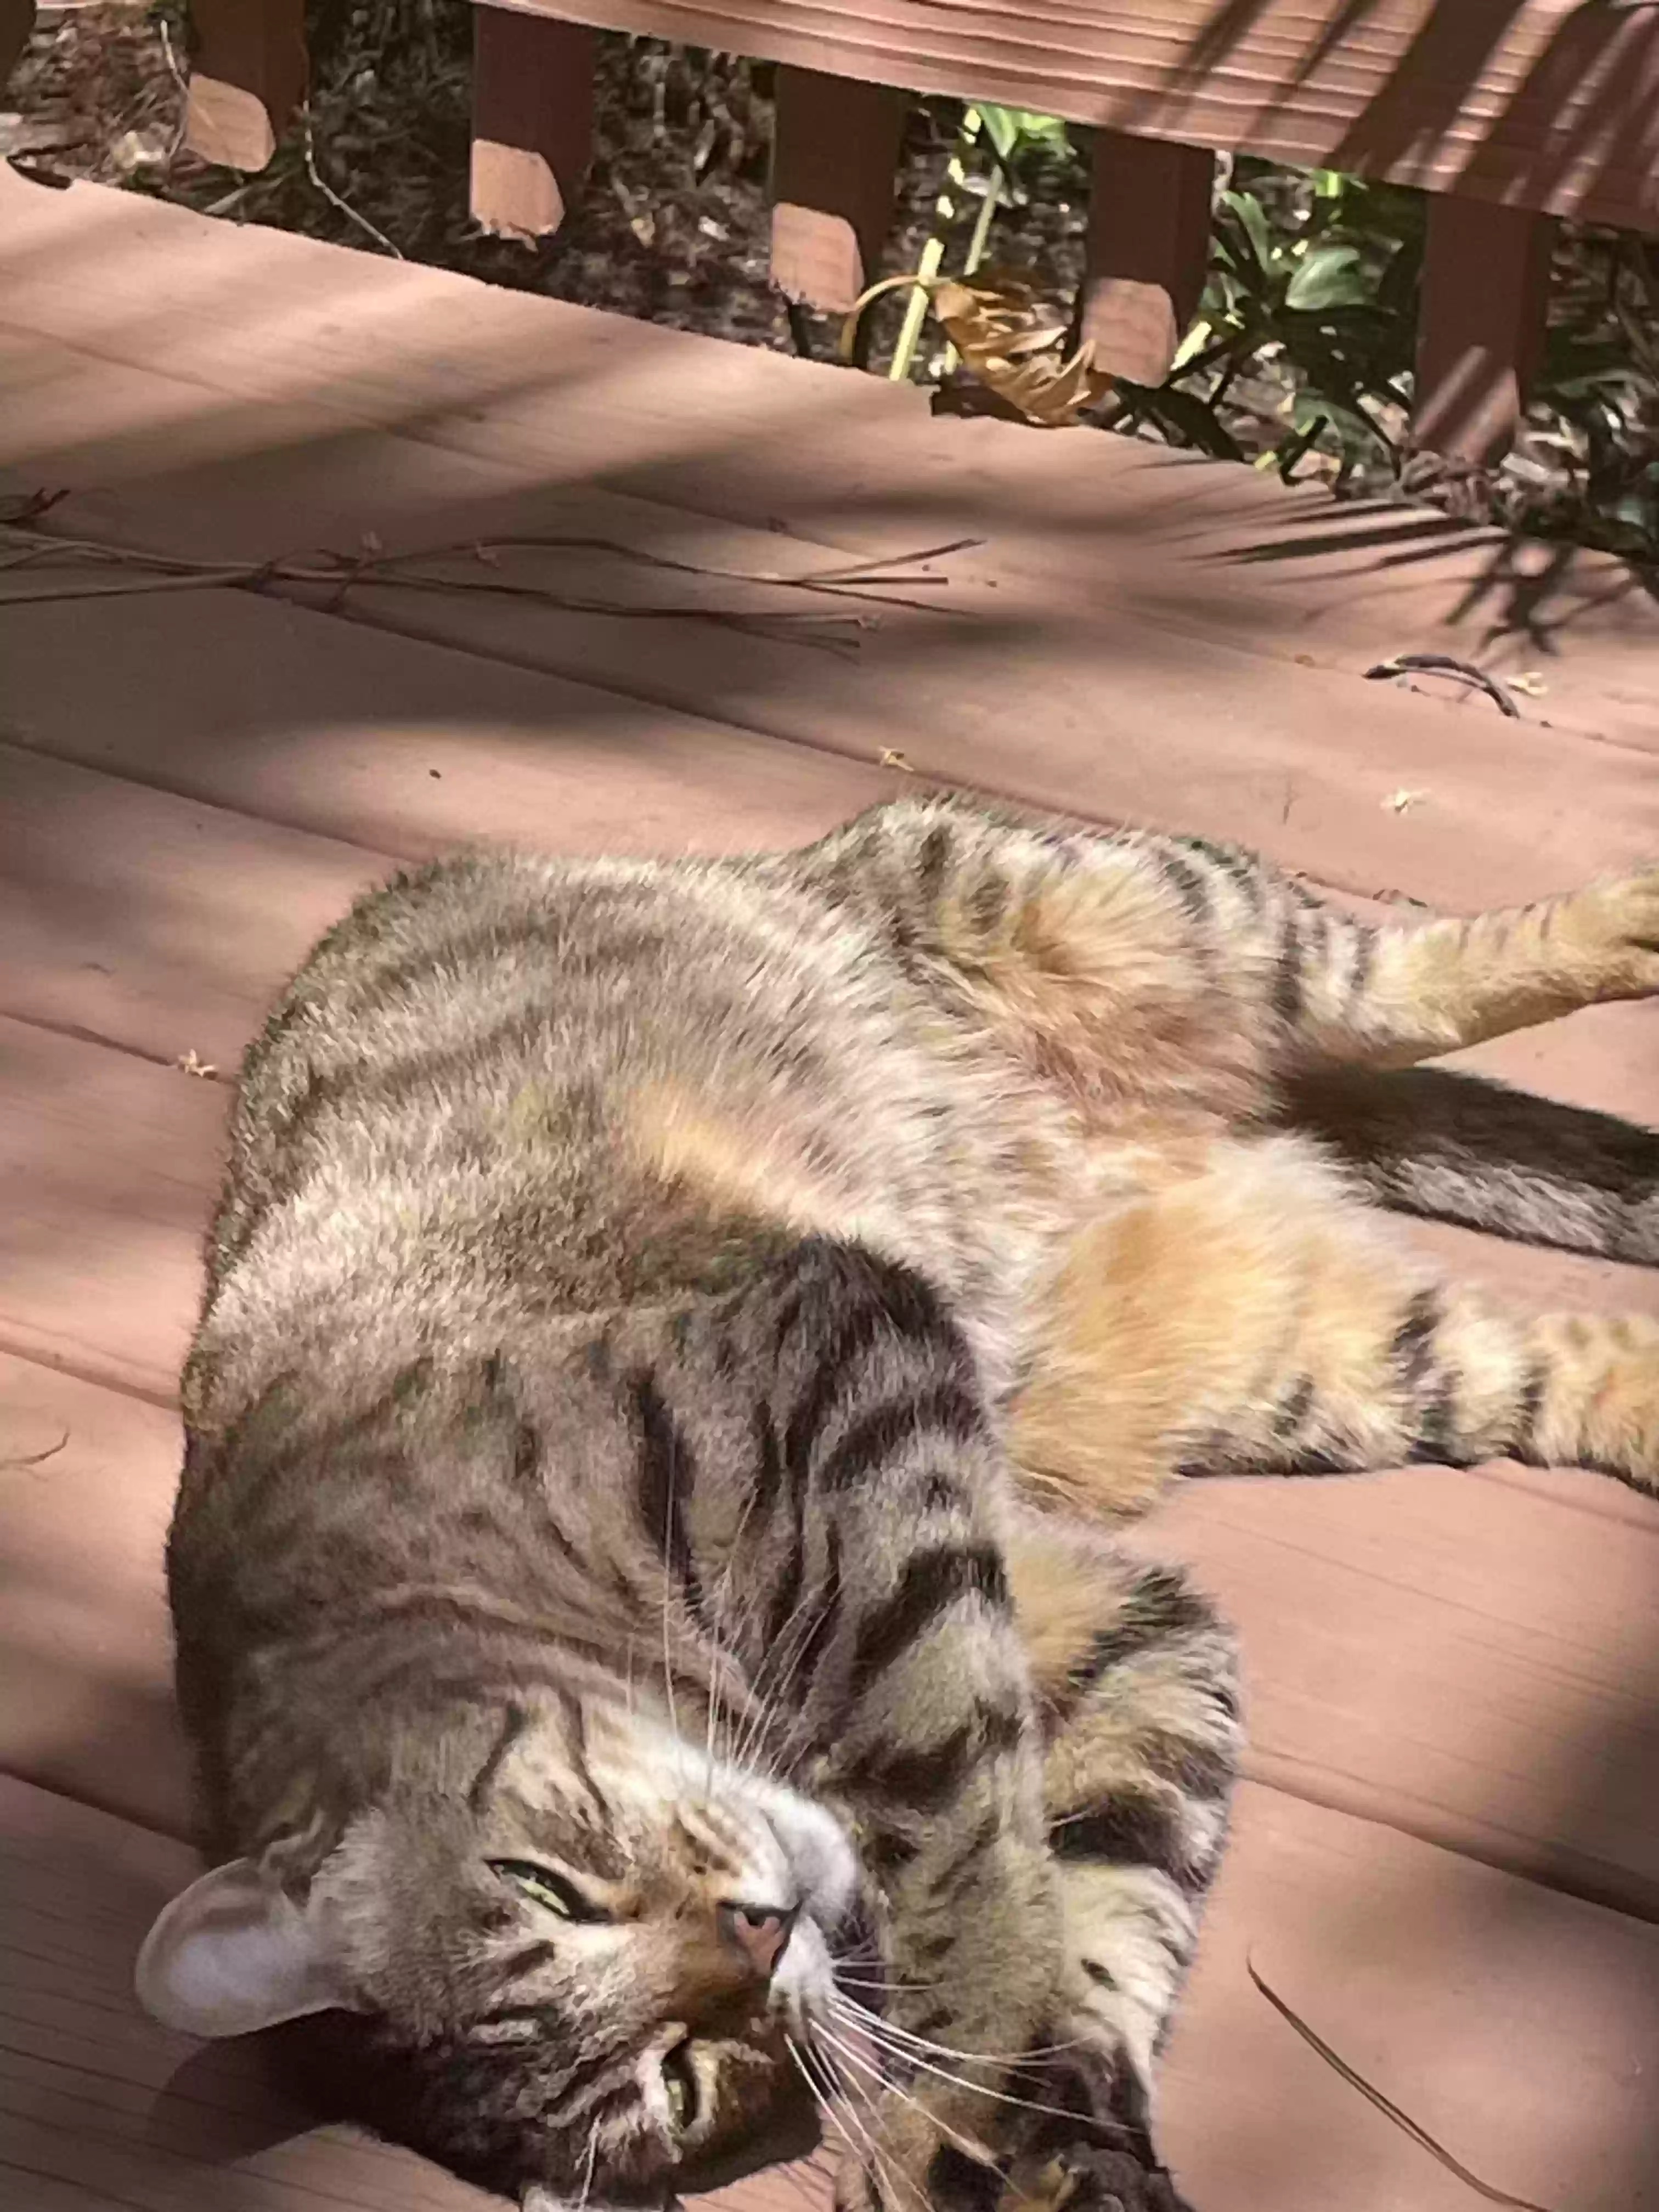 adoptable Cat in Santa Rosa Beach,FL named Big Meow